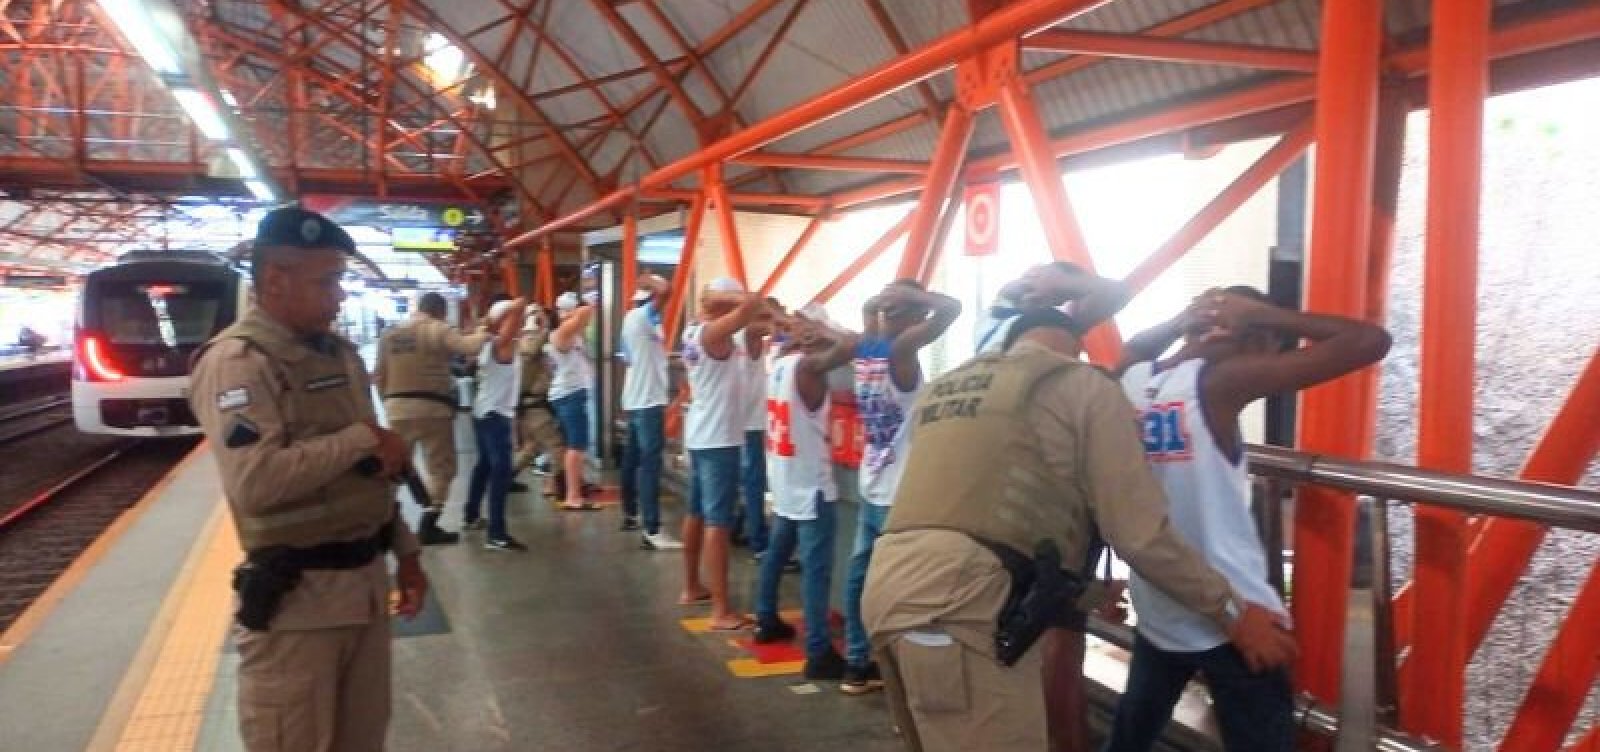 Integrantes da Bamor quebram catraca em estação de metrô e são abordados pela PM